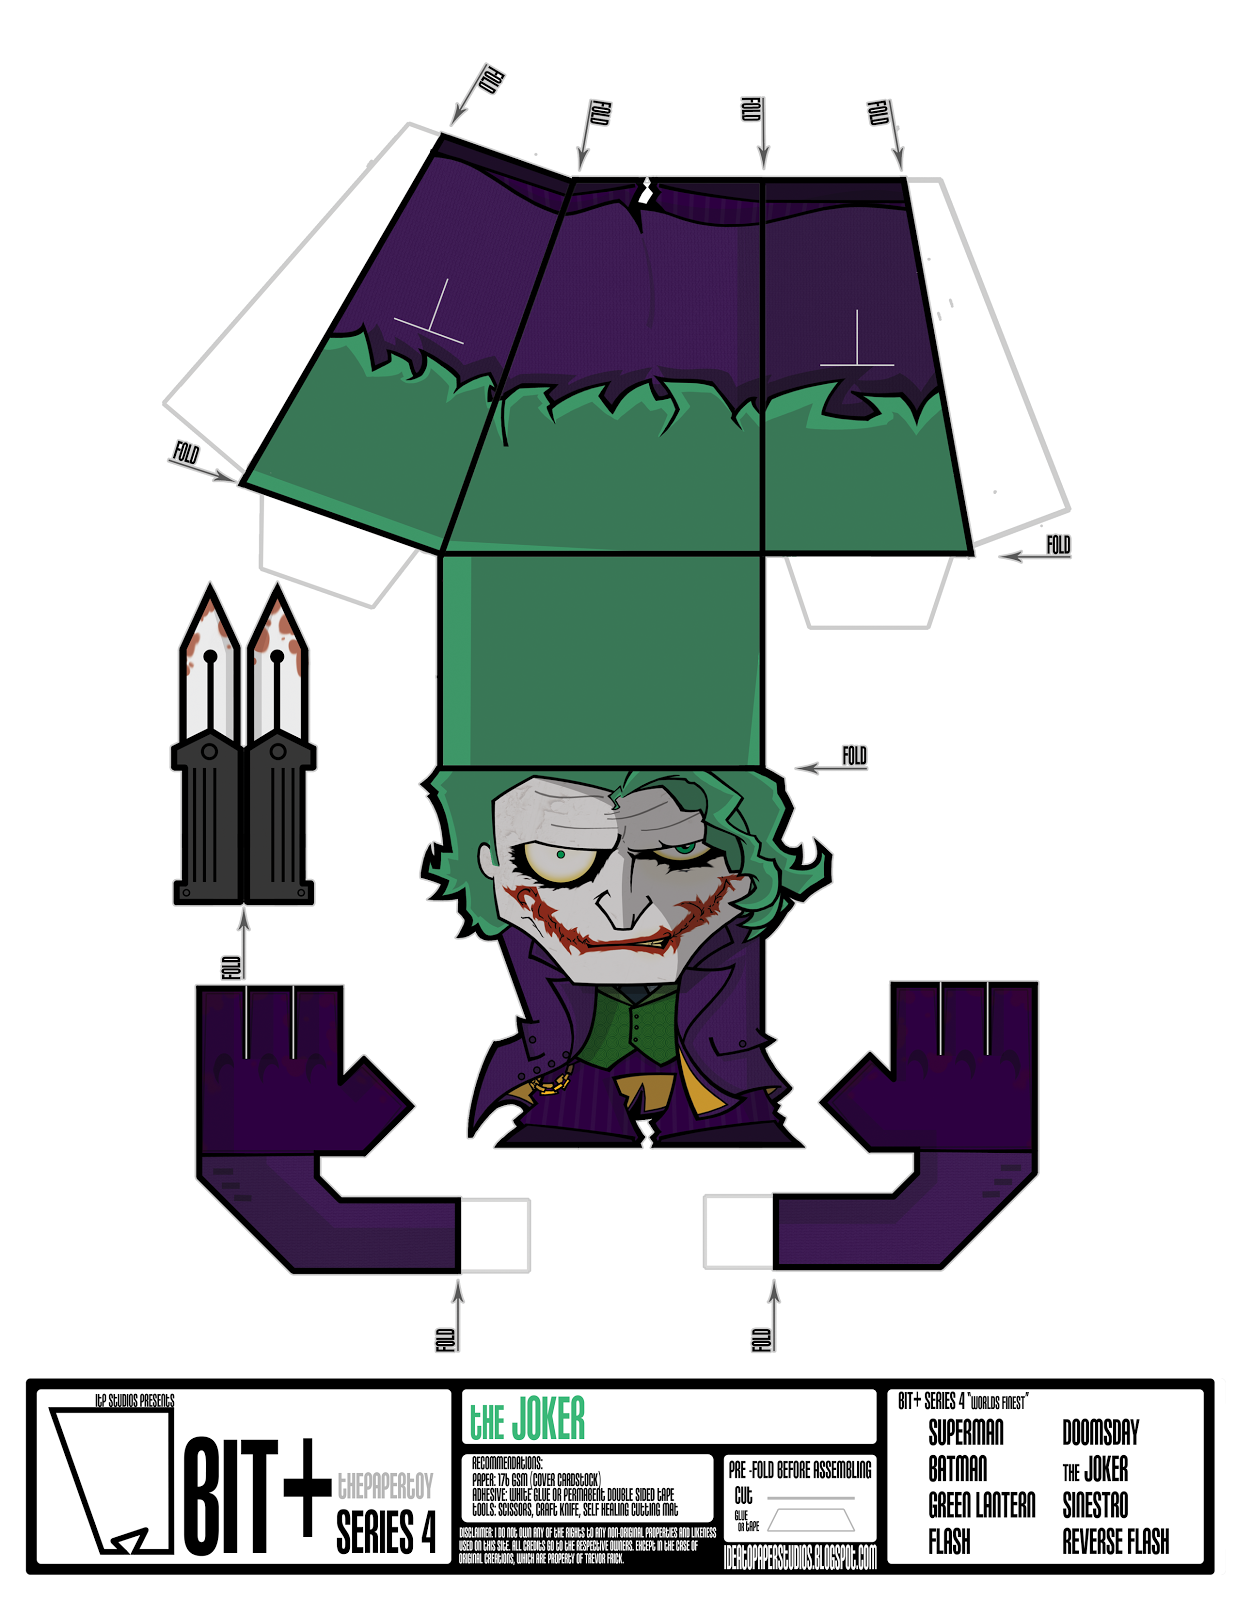 http://1.bp.blogspot.com/-S8UmNIPGhbo/UTdf6vvipuI/AAAAAAAAobc/s2ATOl3Oorw/s1600/papercraft-batman-toys-the-Joker-Sheet.png